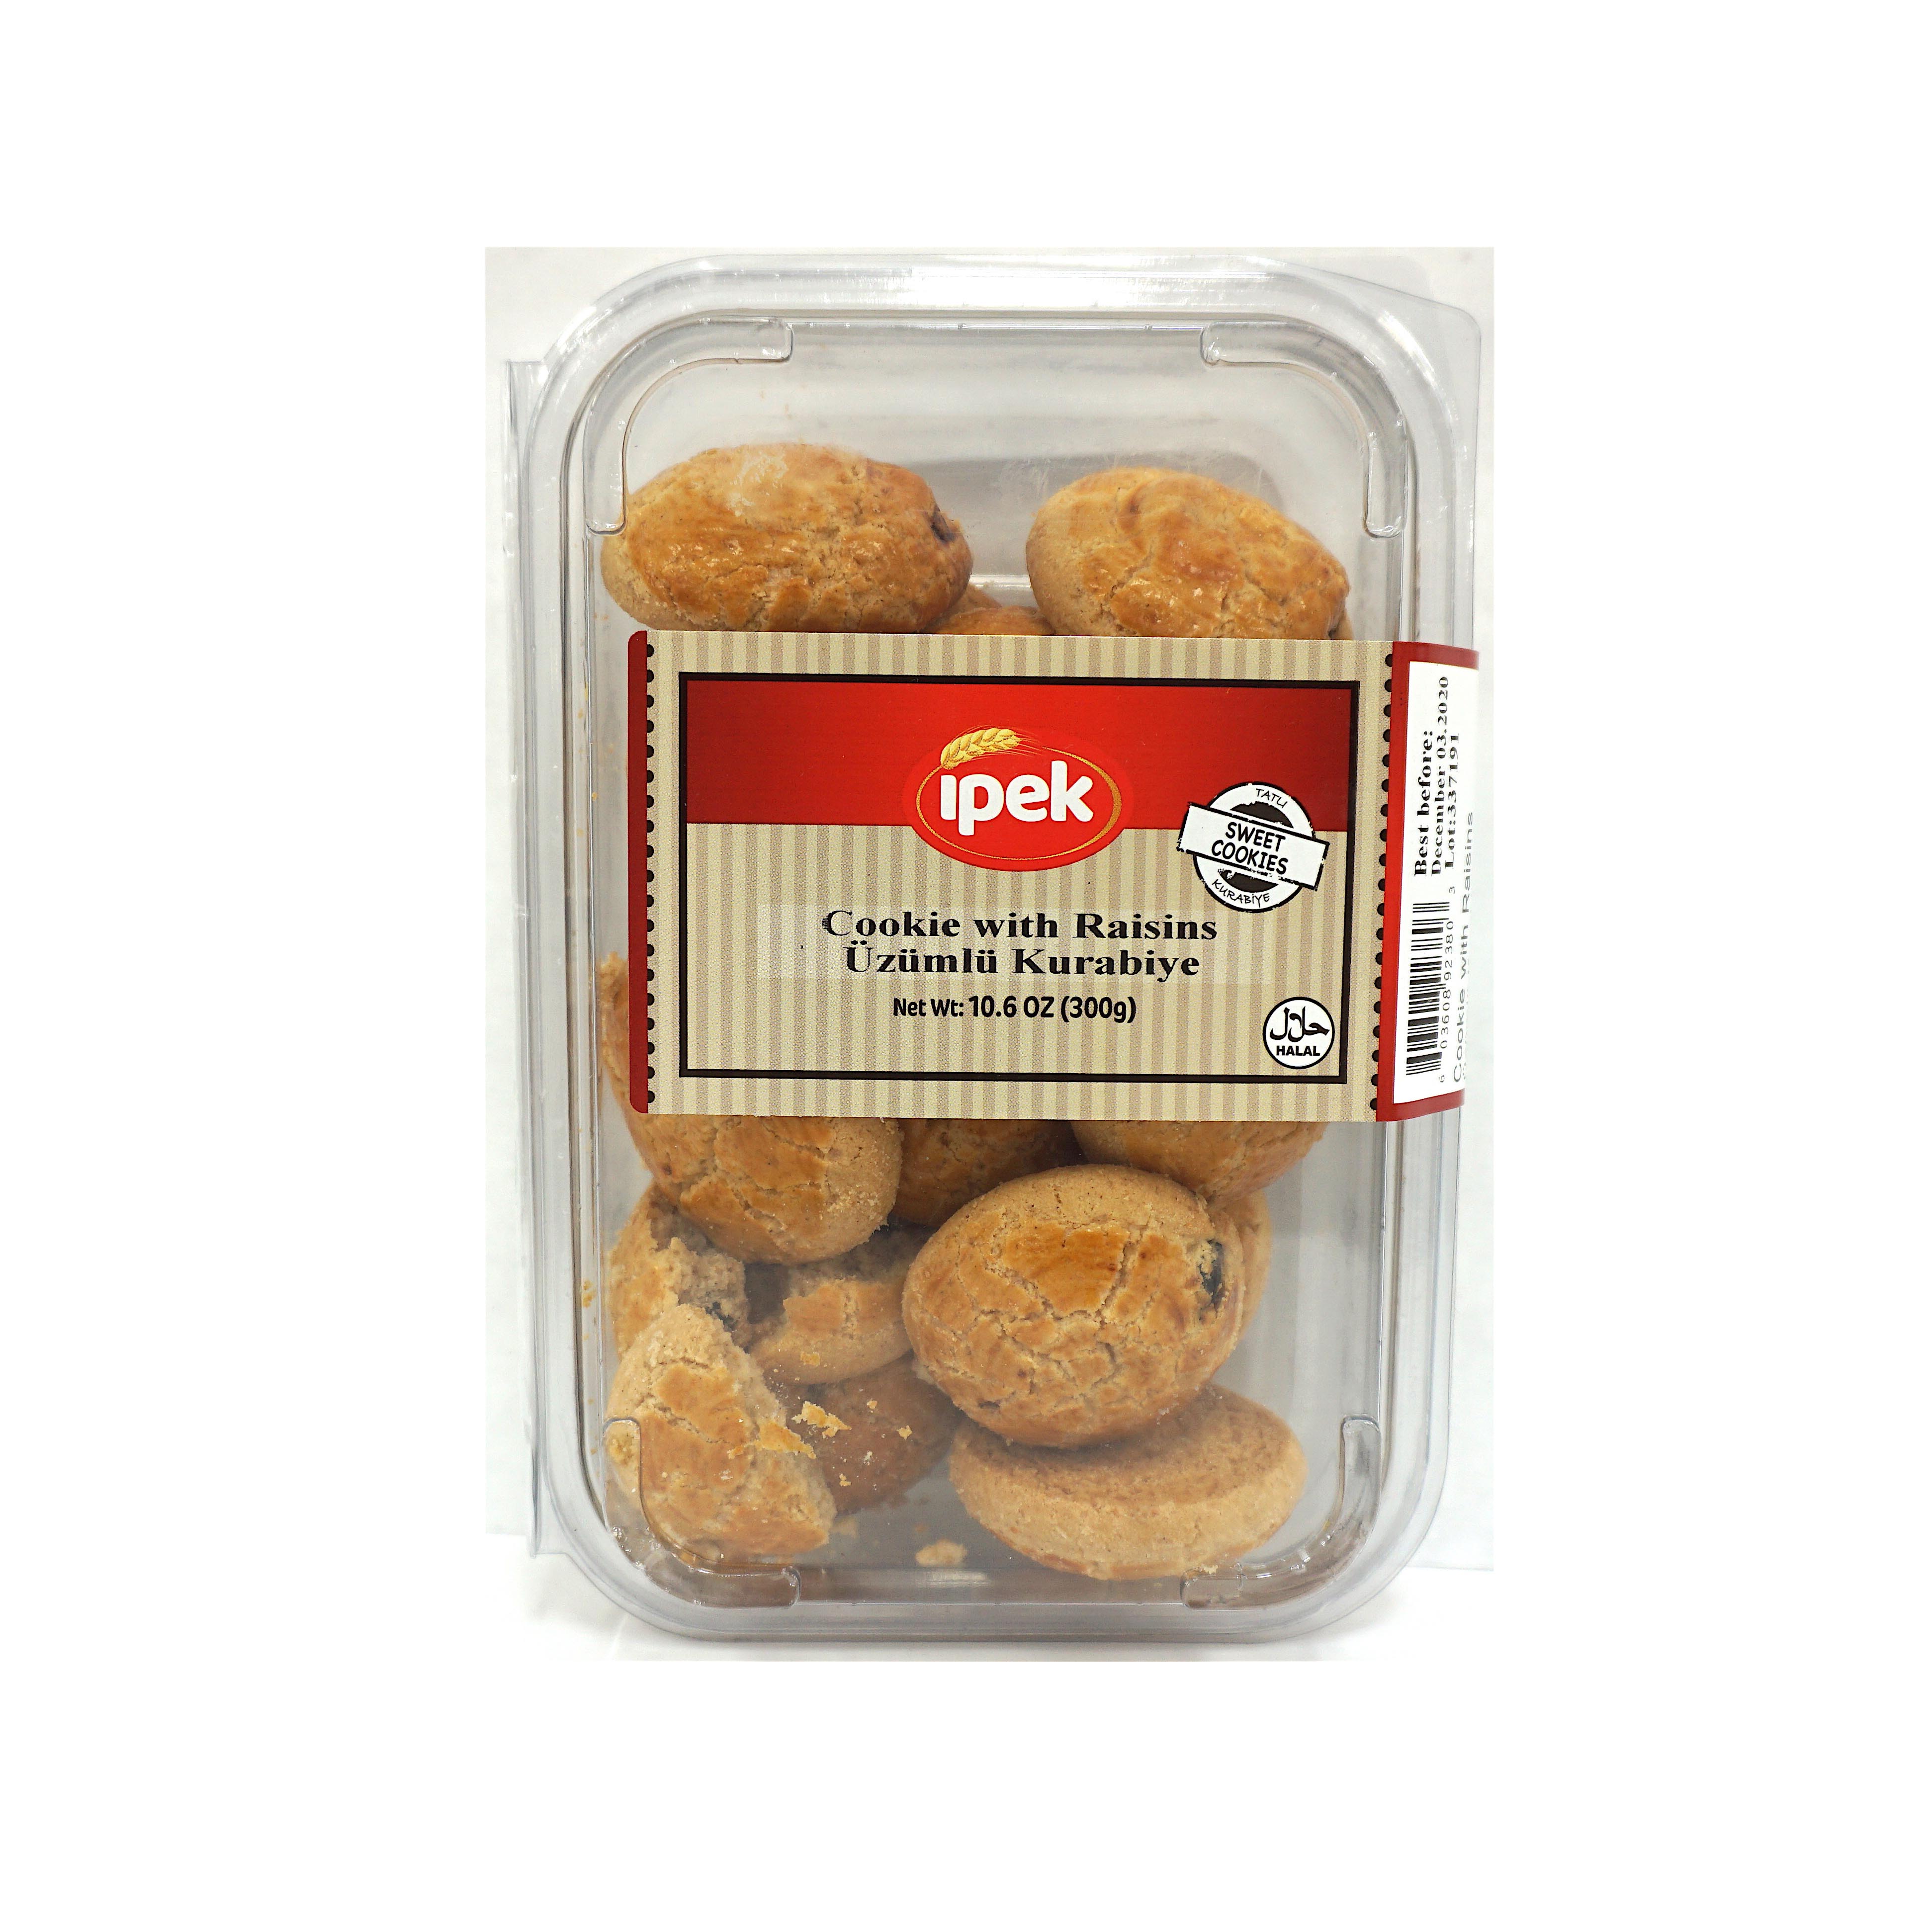 Ipek Cookies With Raisins